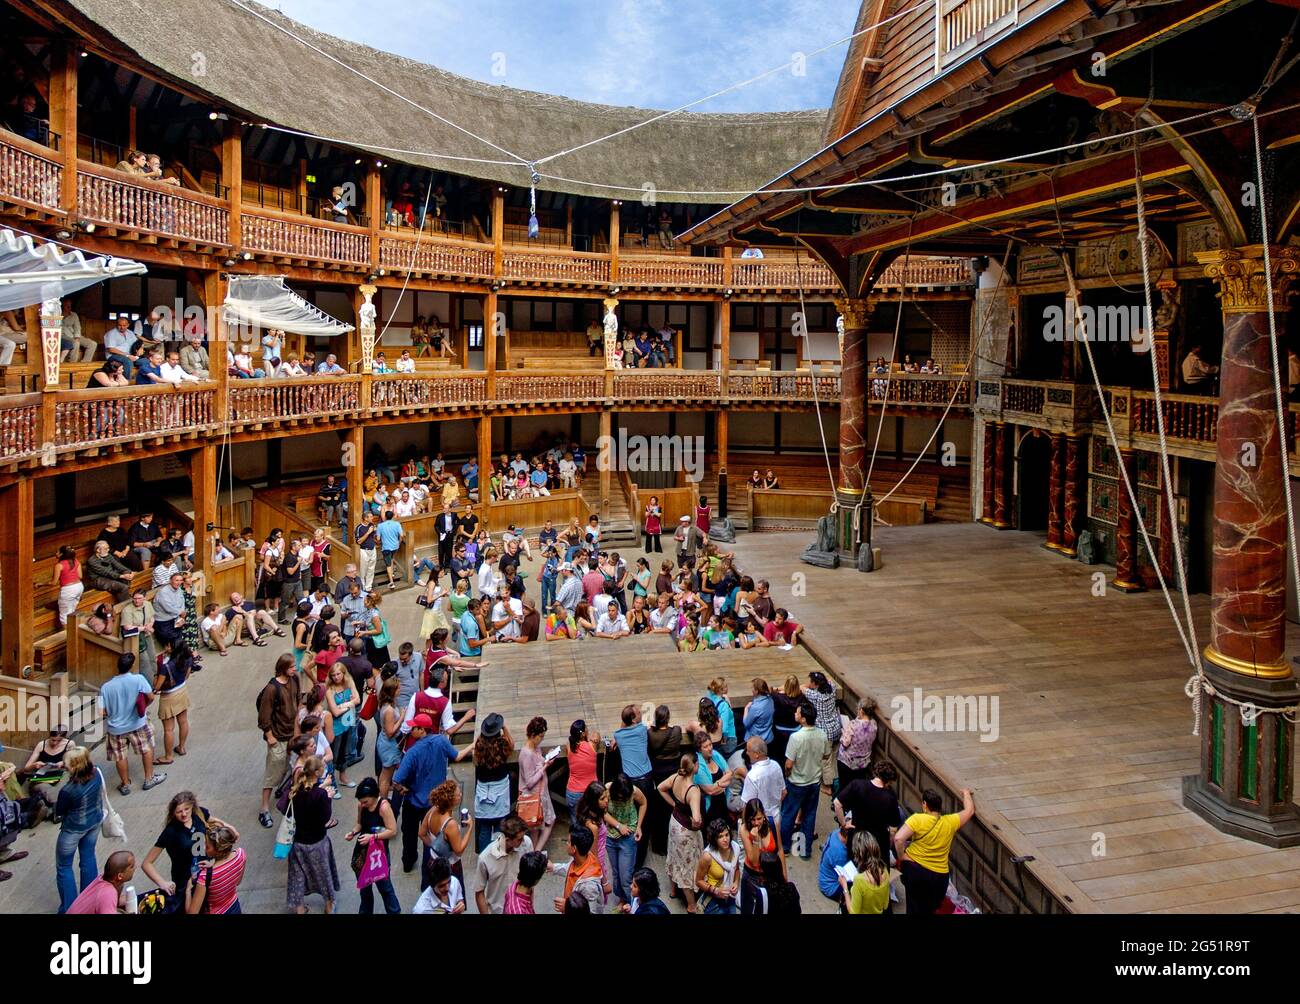 Vue intérieure du William Shakespeare's Globe Theatre avec le public, Londres, Angleterre, Royaume-Uni Banque D'Images